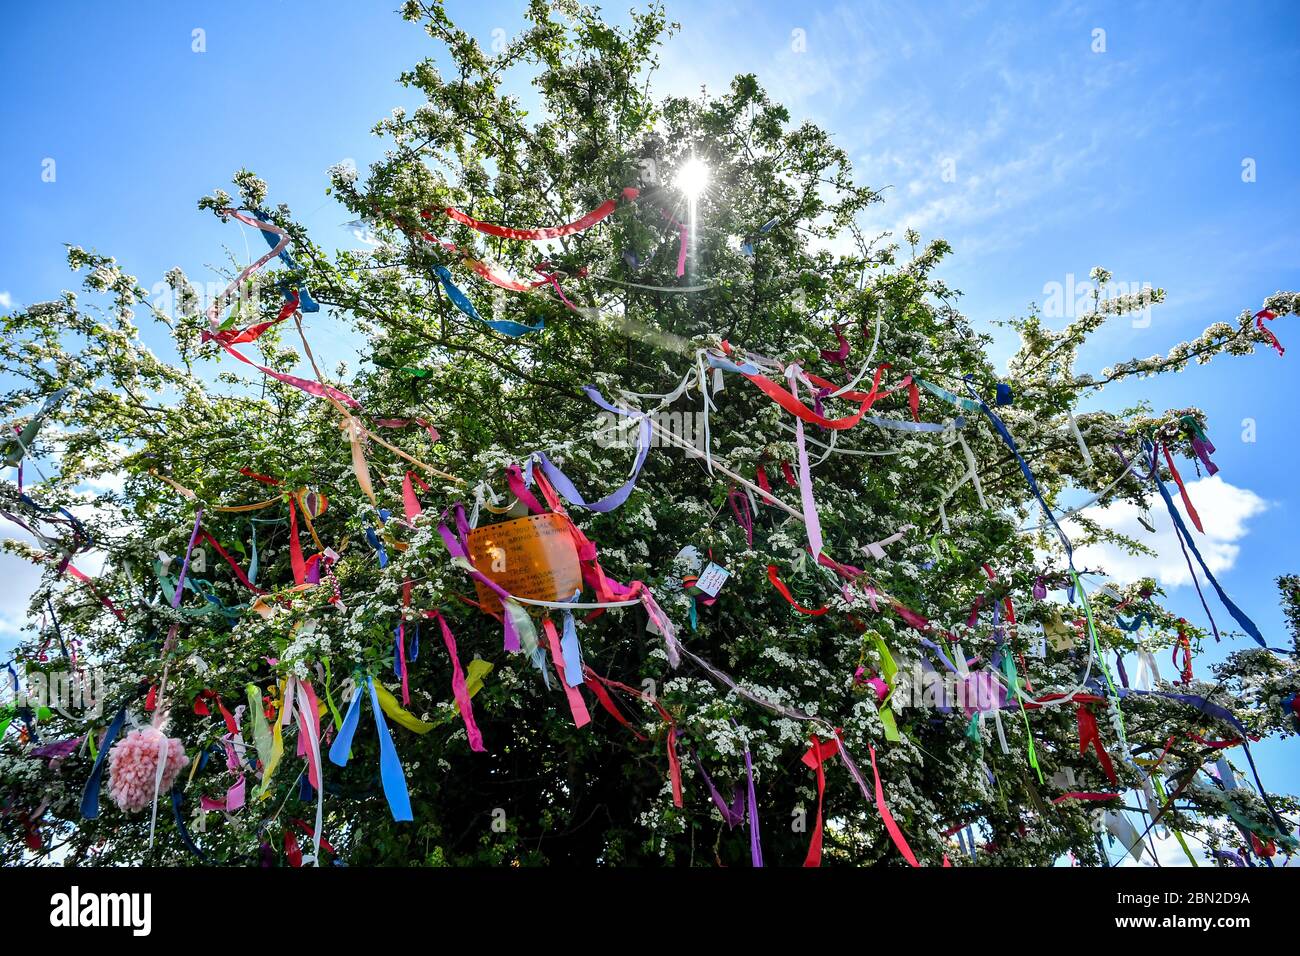 Bänder hängen von einem Wunschbaum, der auch mit Botschaften und Gedichten geschmückt ist, sind auf Clifton Downs, Bristol, erschienen, wo Coronavirus-Botschaften und Gefühle der Hoffnung und Positivität durch bunte Bänder an den Baum gebunden wurden. Stockfoto